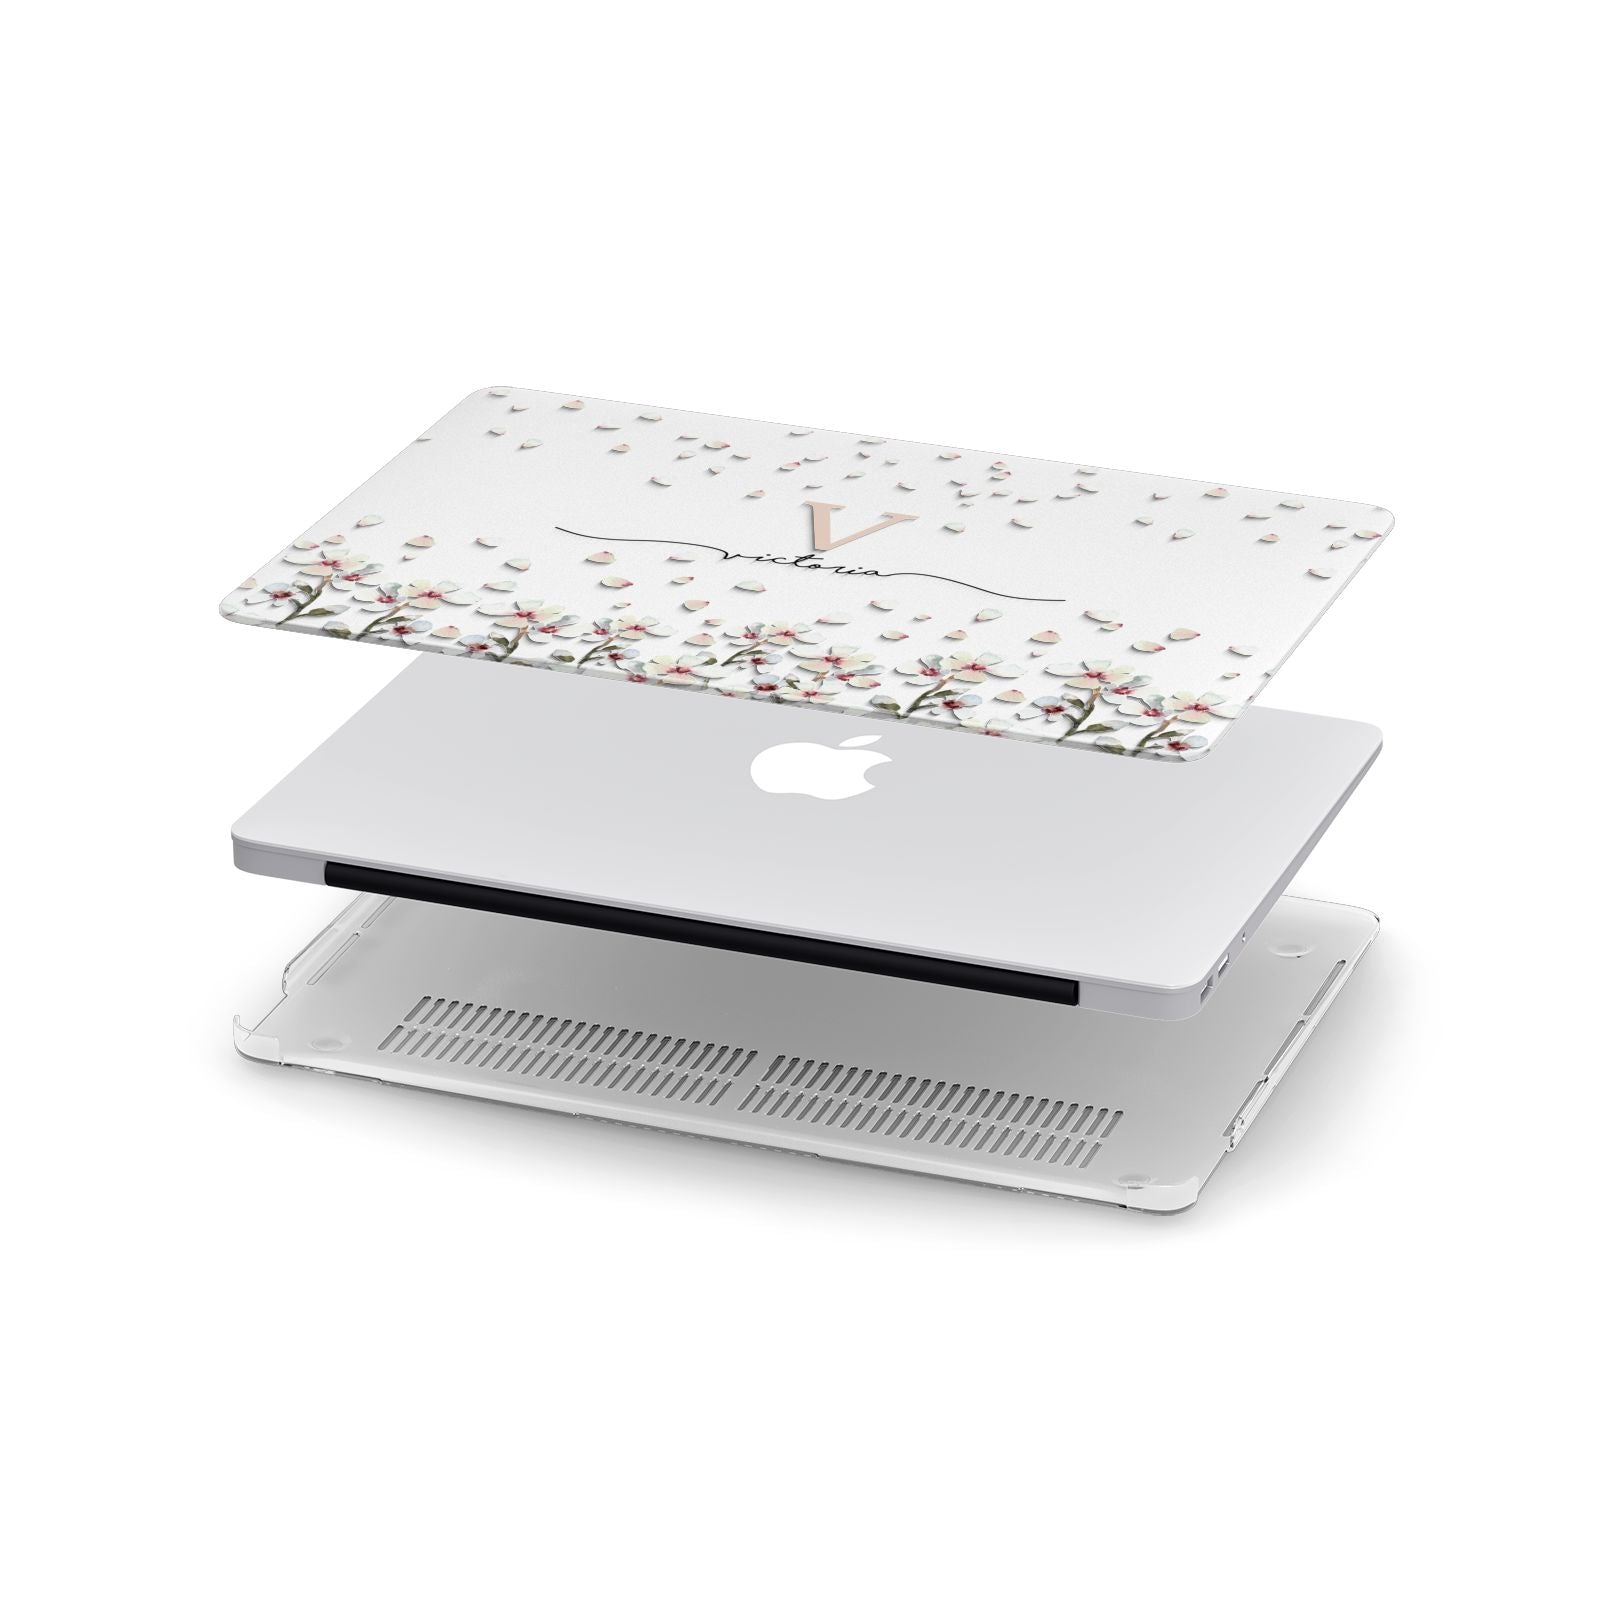 Personalised Petals Apple MacBook Case in Detail